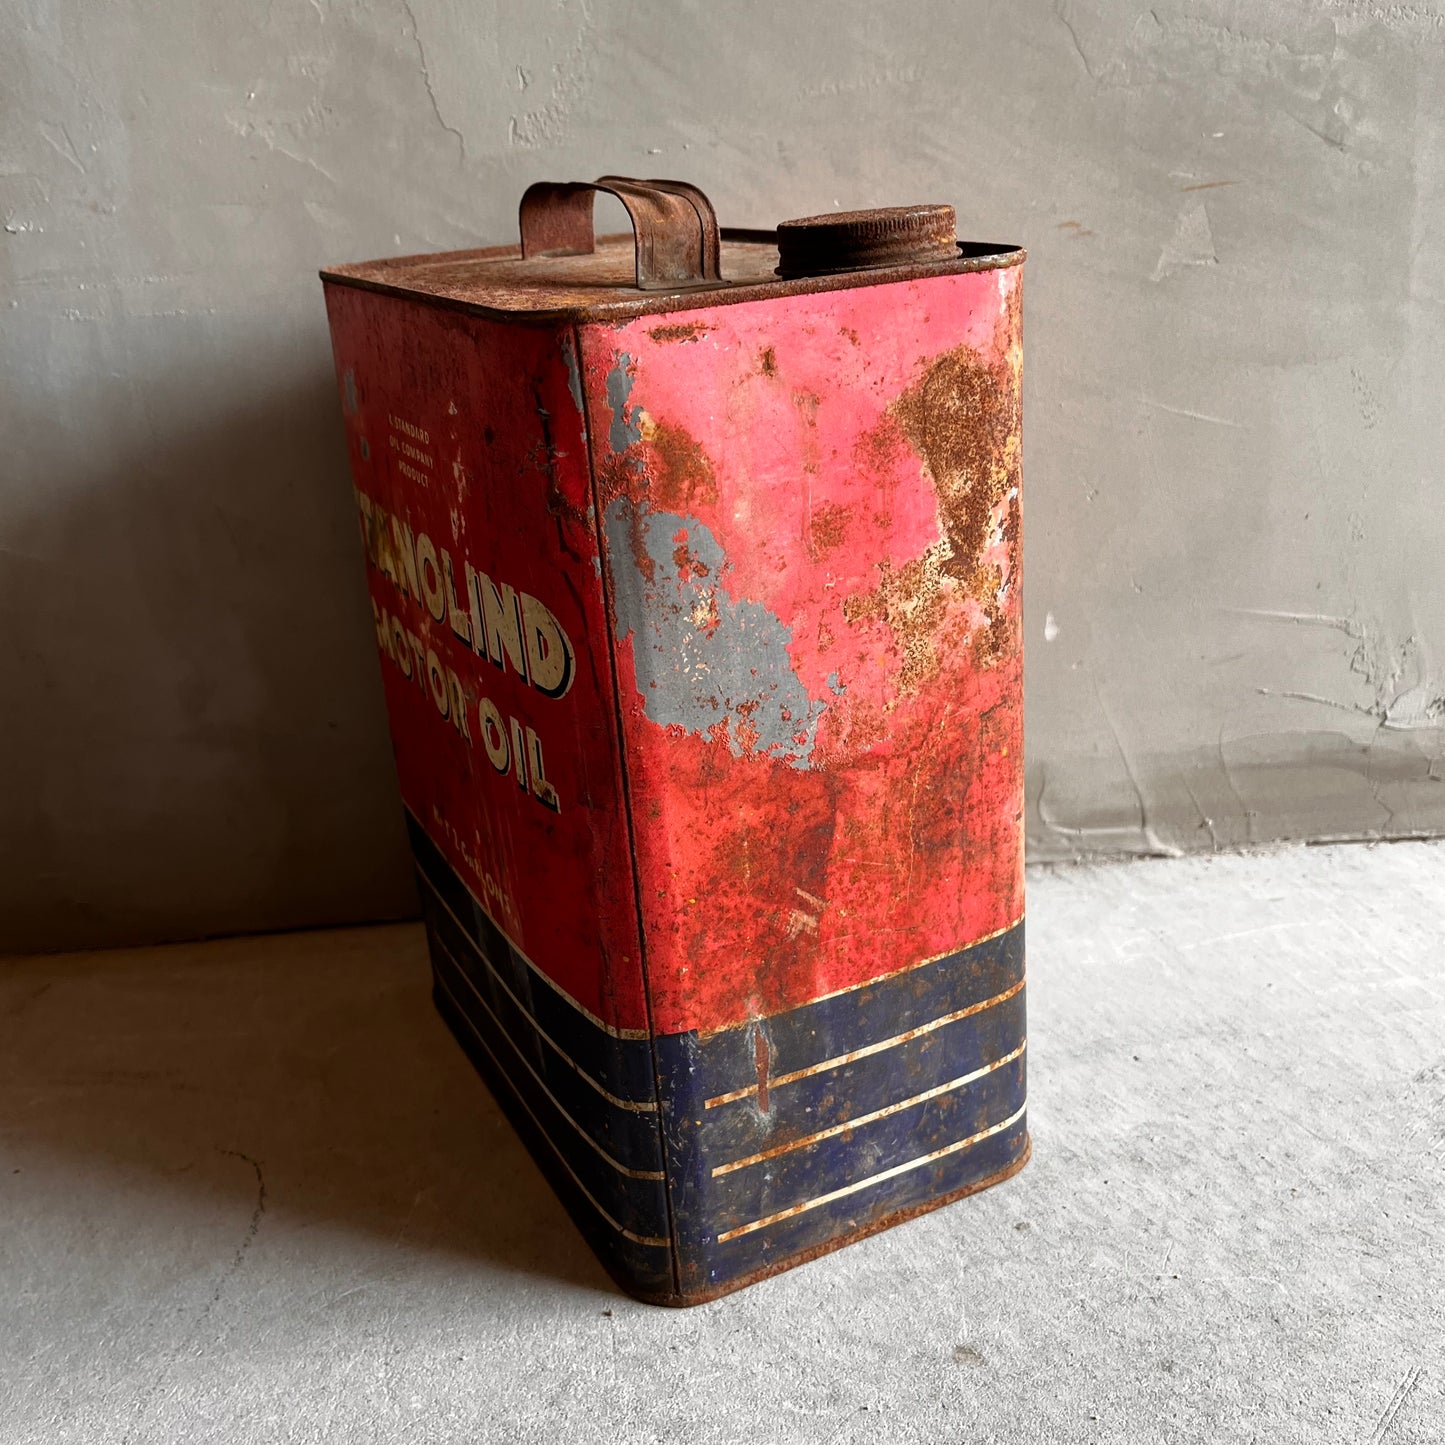 【USA vintage】STANOLIND MOTOR OIL オイル缶